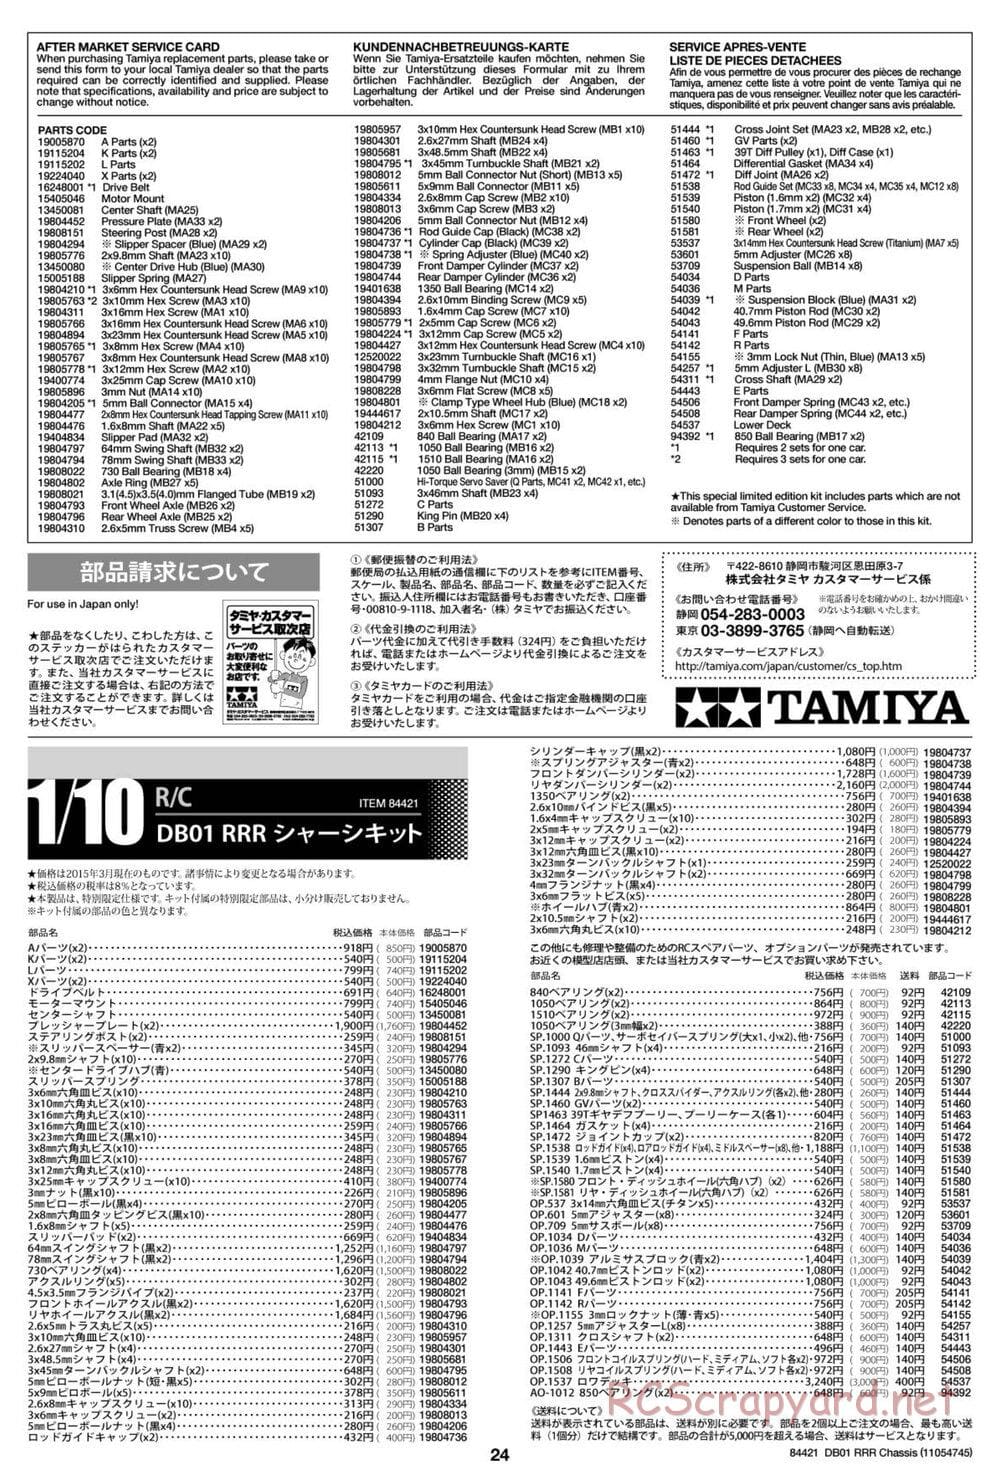 Tamiya - DB-01 RRR Chassis - Manual - Page 24